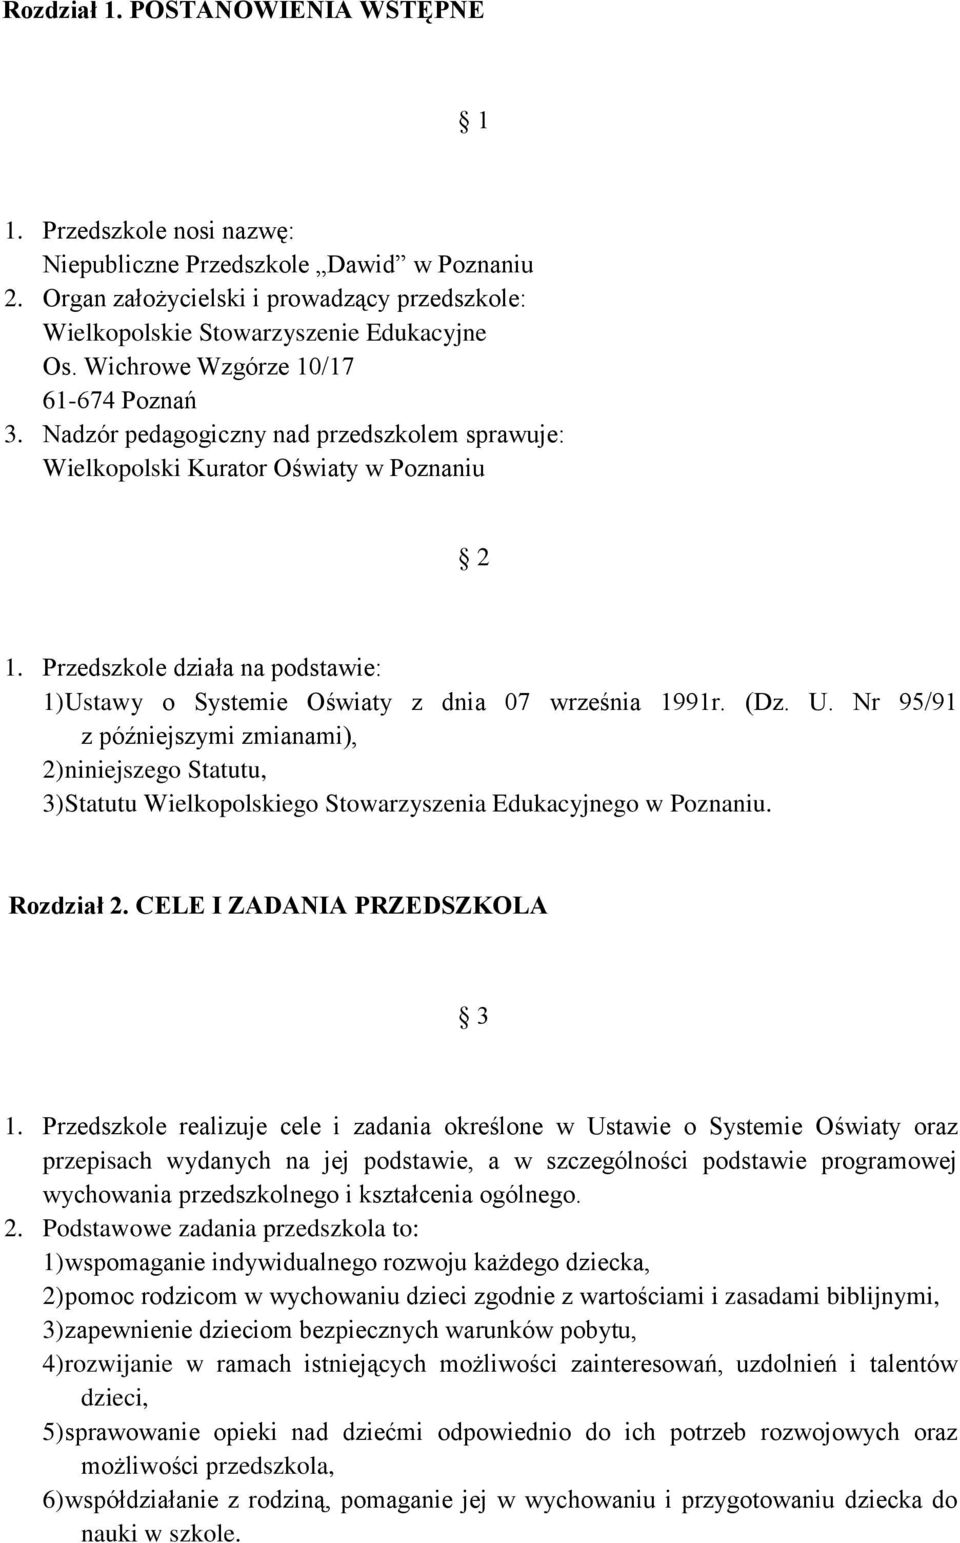 Przedszkole działa na podstawie: 1) Ustawy o Systemie Oświaty z dnia 07 września 1991r. (Dz. U. Nr 95/91 z późniejszymi zmianami), 2) niniejszego Statutu, 3) Statutu Wielkopolskiego Stowarzyszenia Edukacyjnego w Poznaniu.